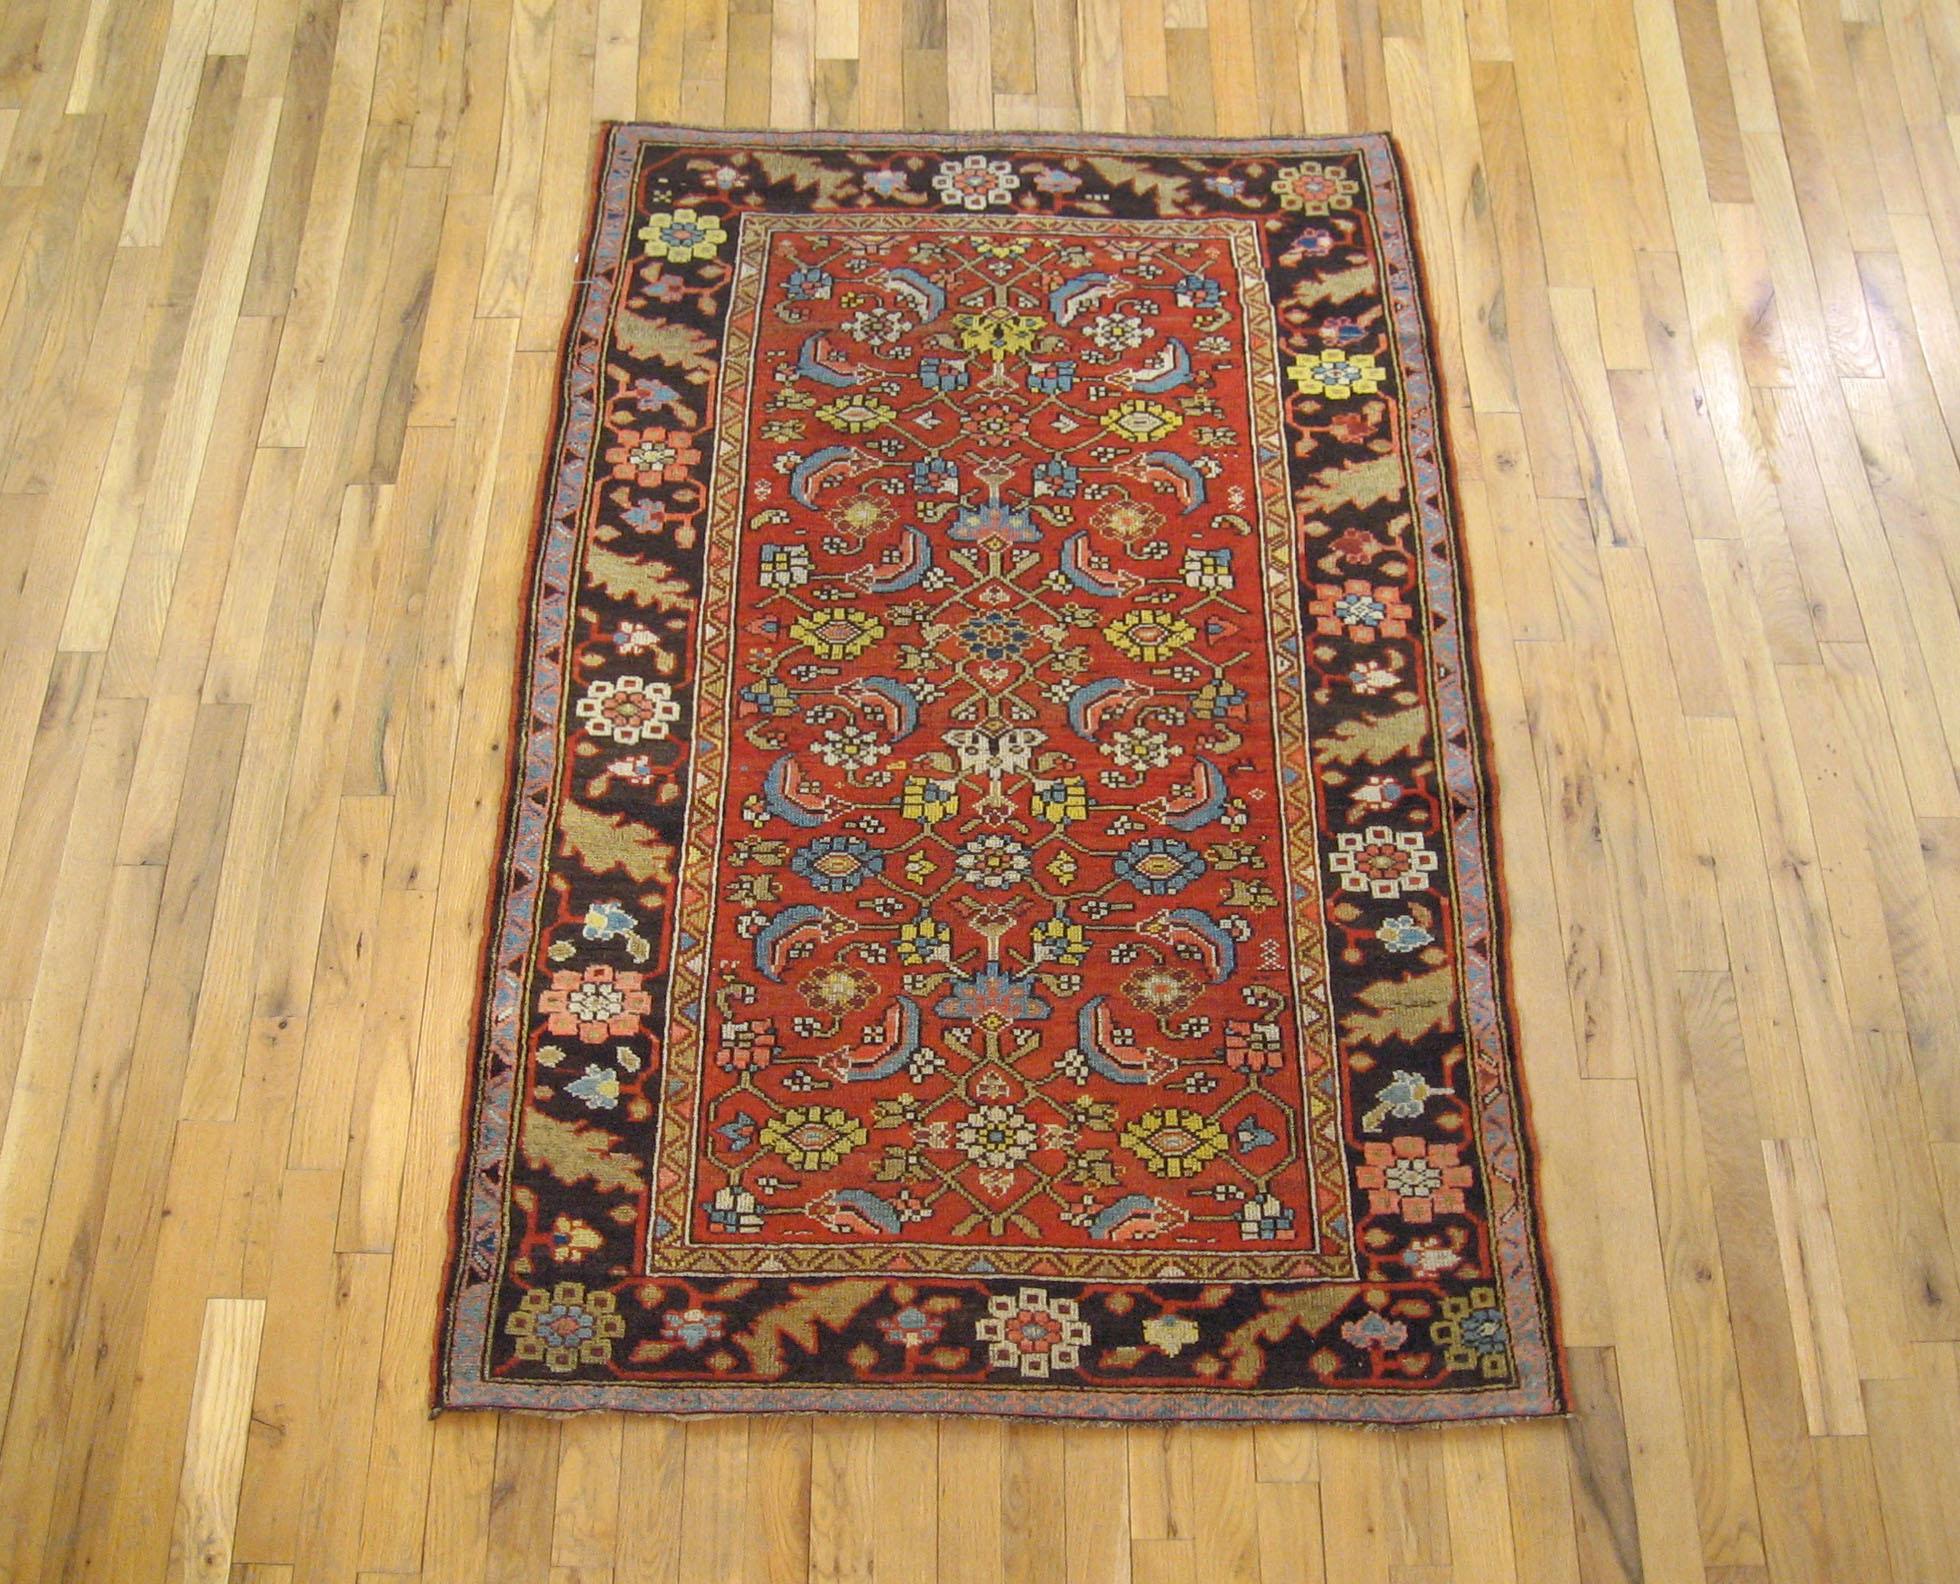 Antiker persischer Bidjar-Teppich, kleines Format, um 1900.

Ein einzigartiger antiker persischer Bidjar Orientteppich, handgeknüpft mit weichem Wollflor. Dieser schöne Teppich zeigt ein sich wiederholendes Herati-Muster auf einem weichen roten